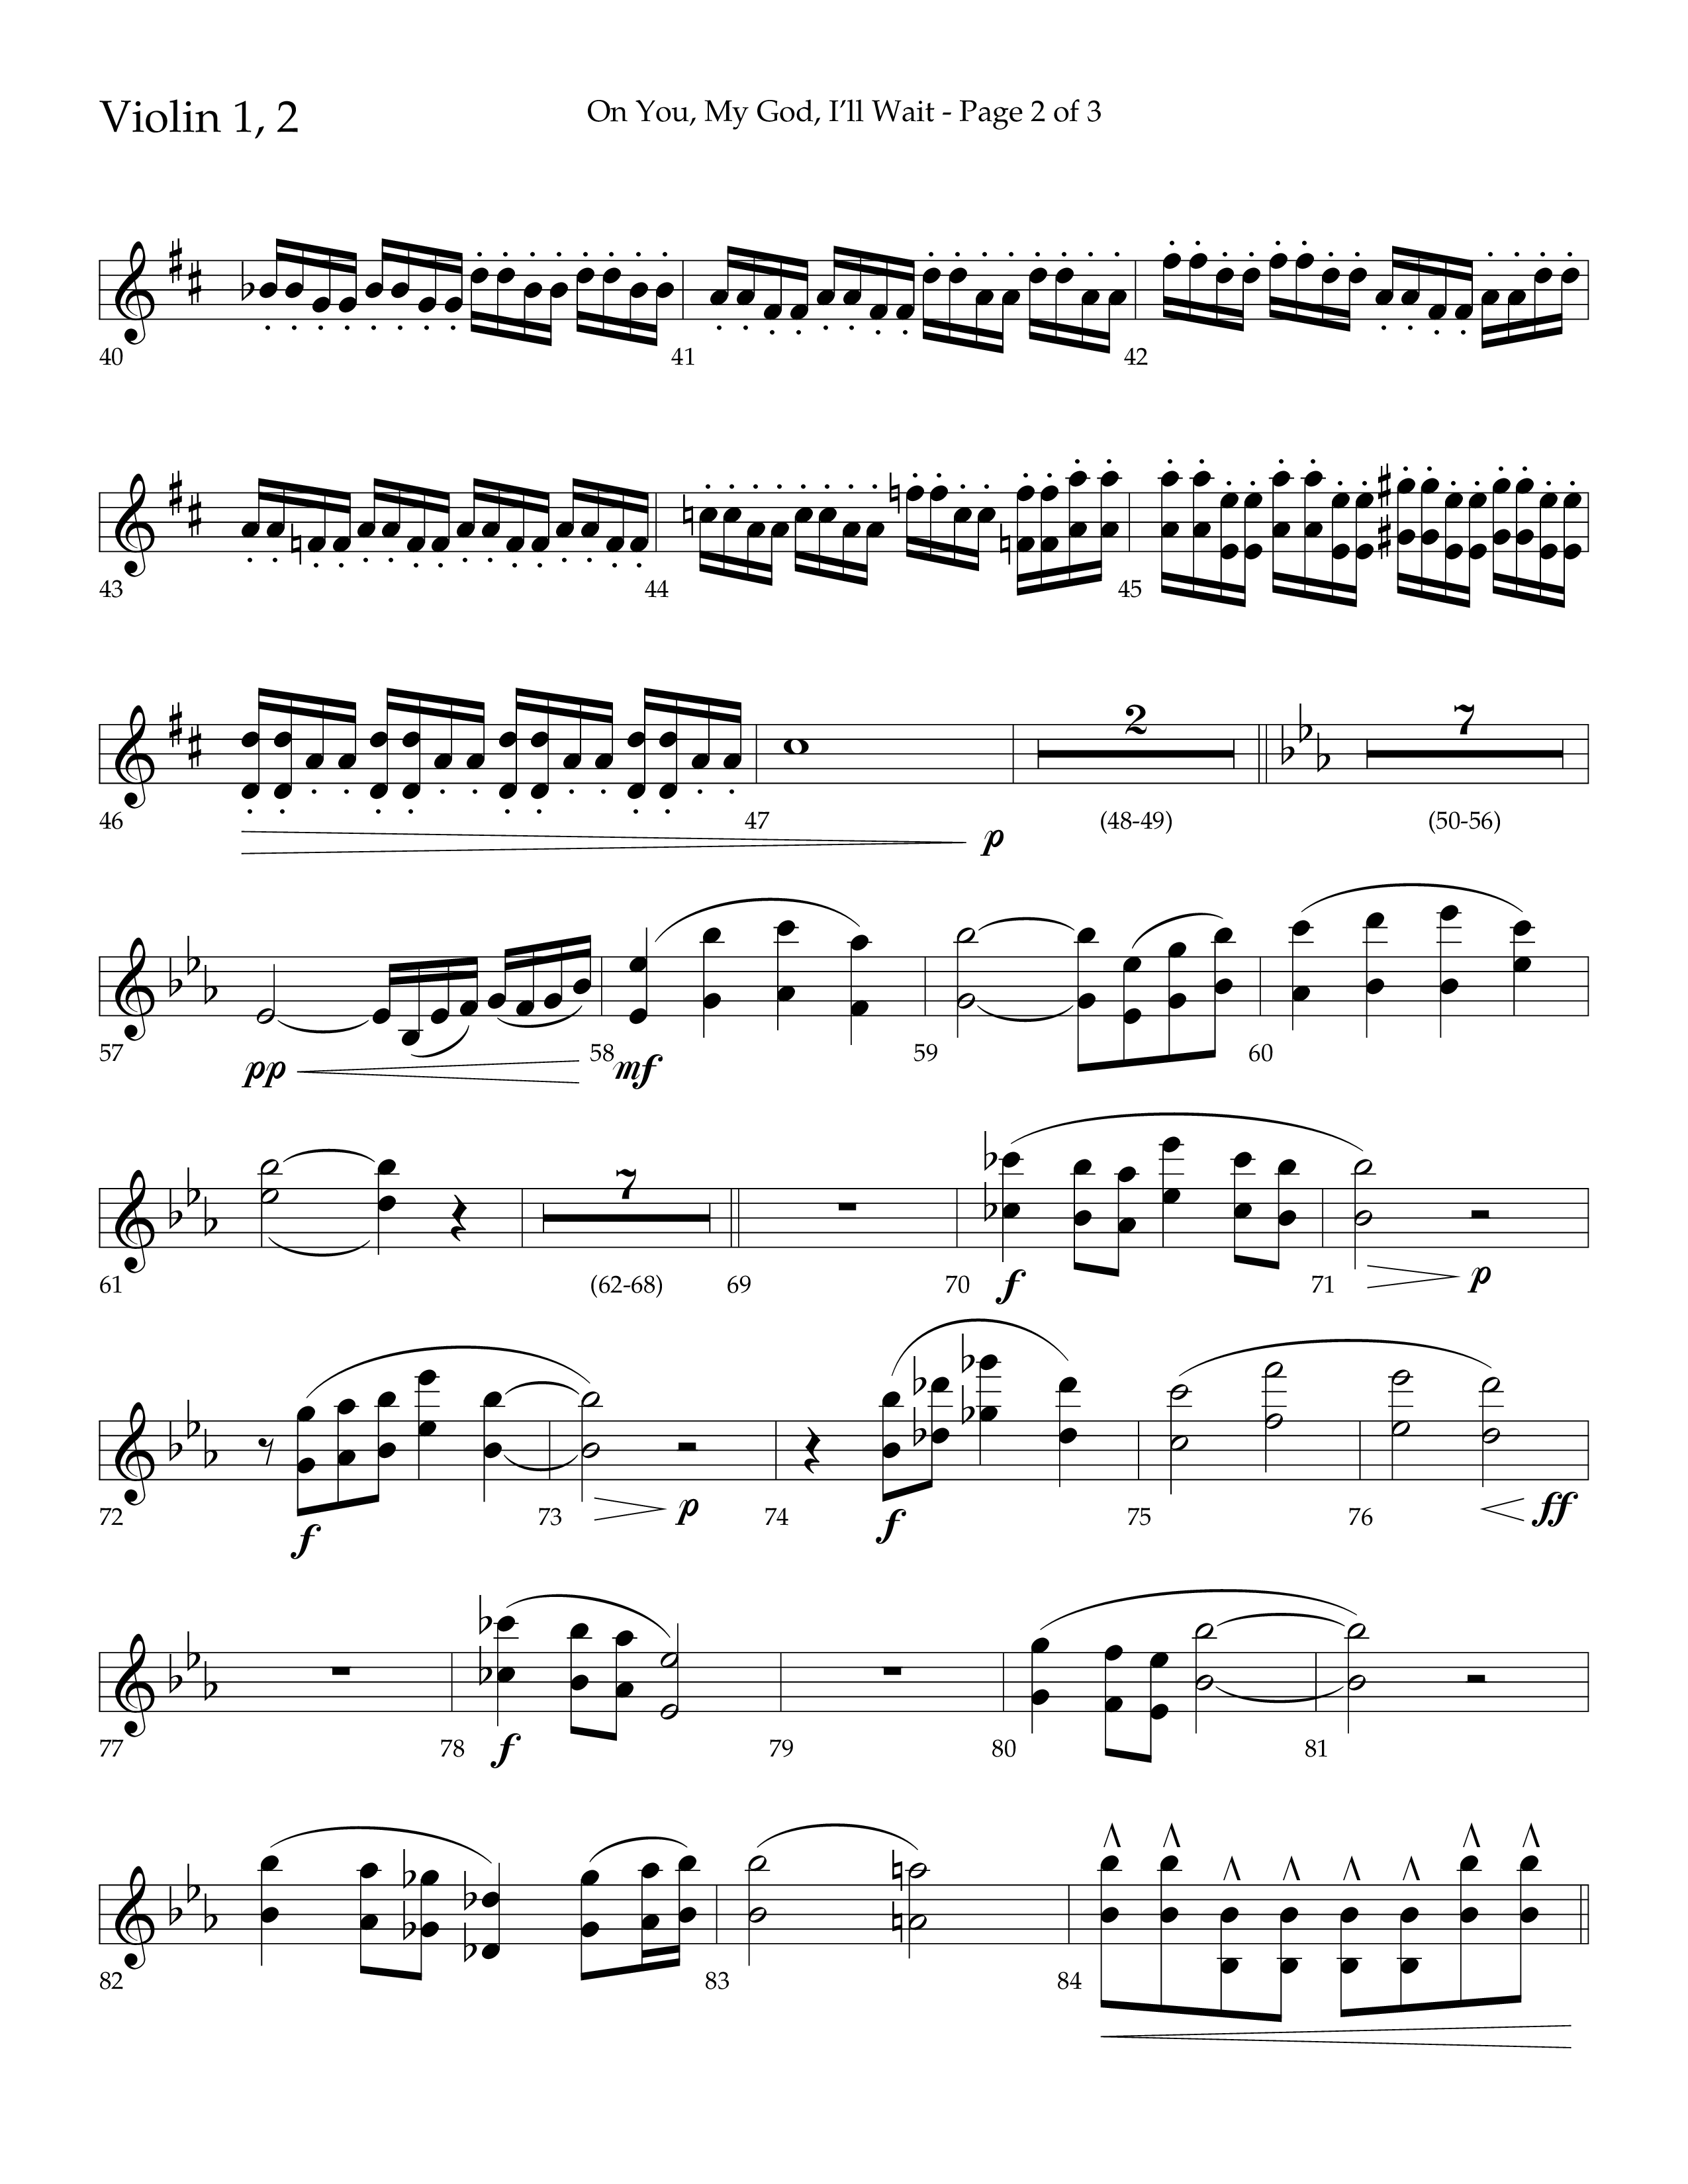 On You My God I'll Wait (Choral Anthem SATB) Violin 1/2 (Lifeway Choral / Arr. Craig Adams / Arr. Mike Harland)